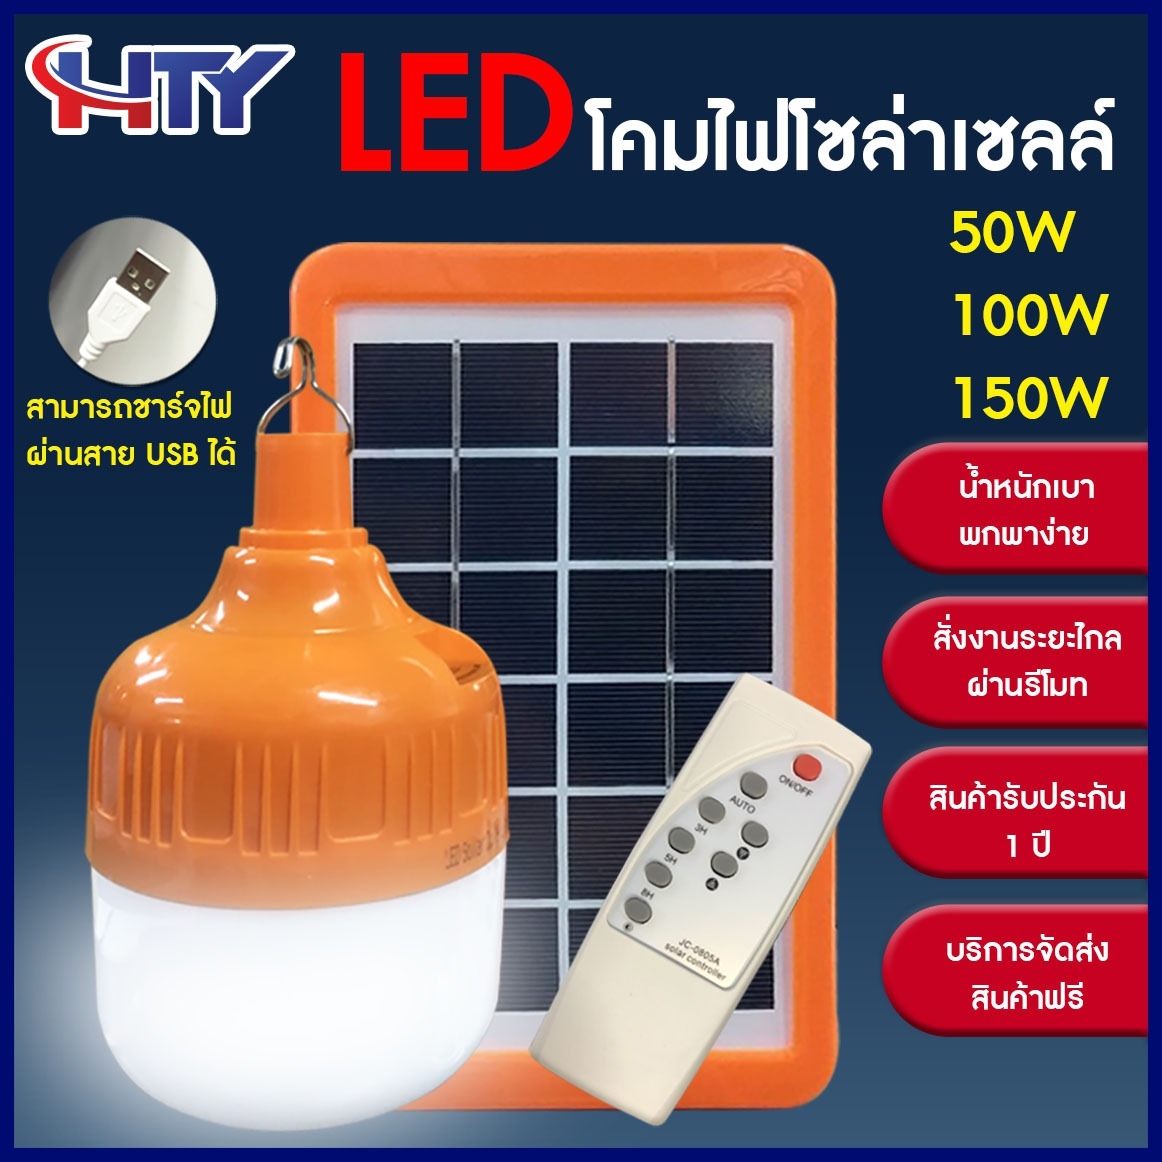 HTY Solar cell bulb 50W 100W 150W หลอดไฟ led หลอดไฟ หลอดไฟกลม หลอดไฟโซล่าเซล หลอดไฟพกพา ไฟ USB Bulb หลอดไฟชาร์จแบตได้